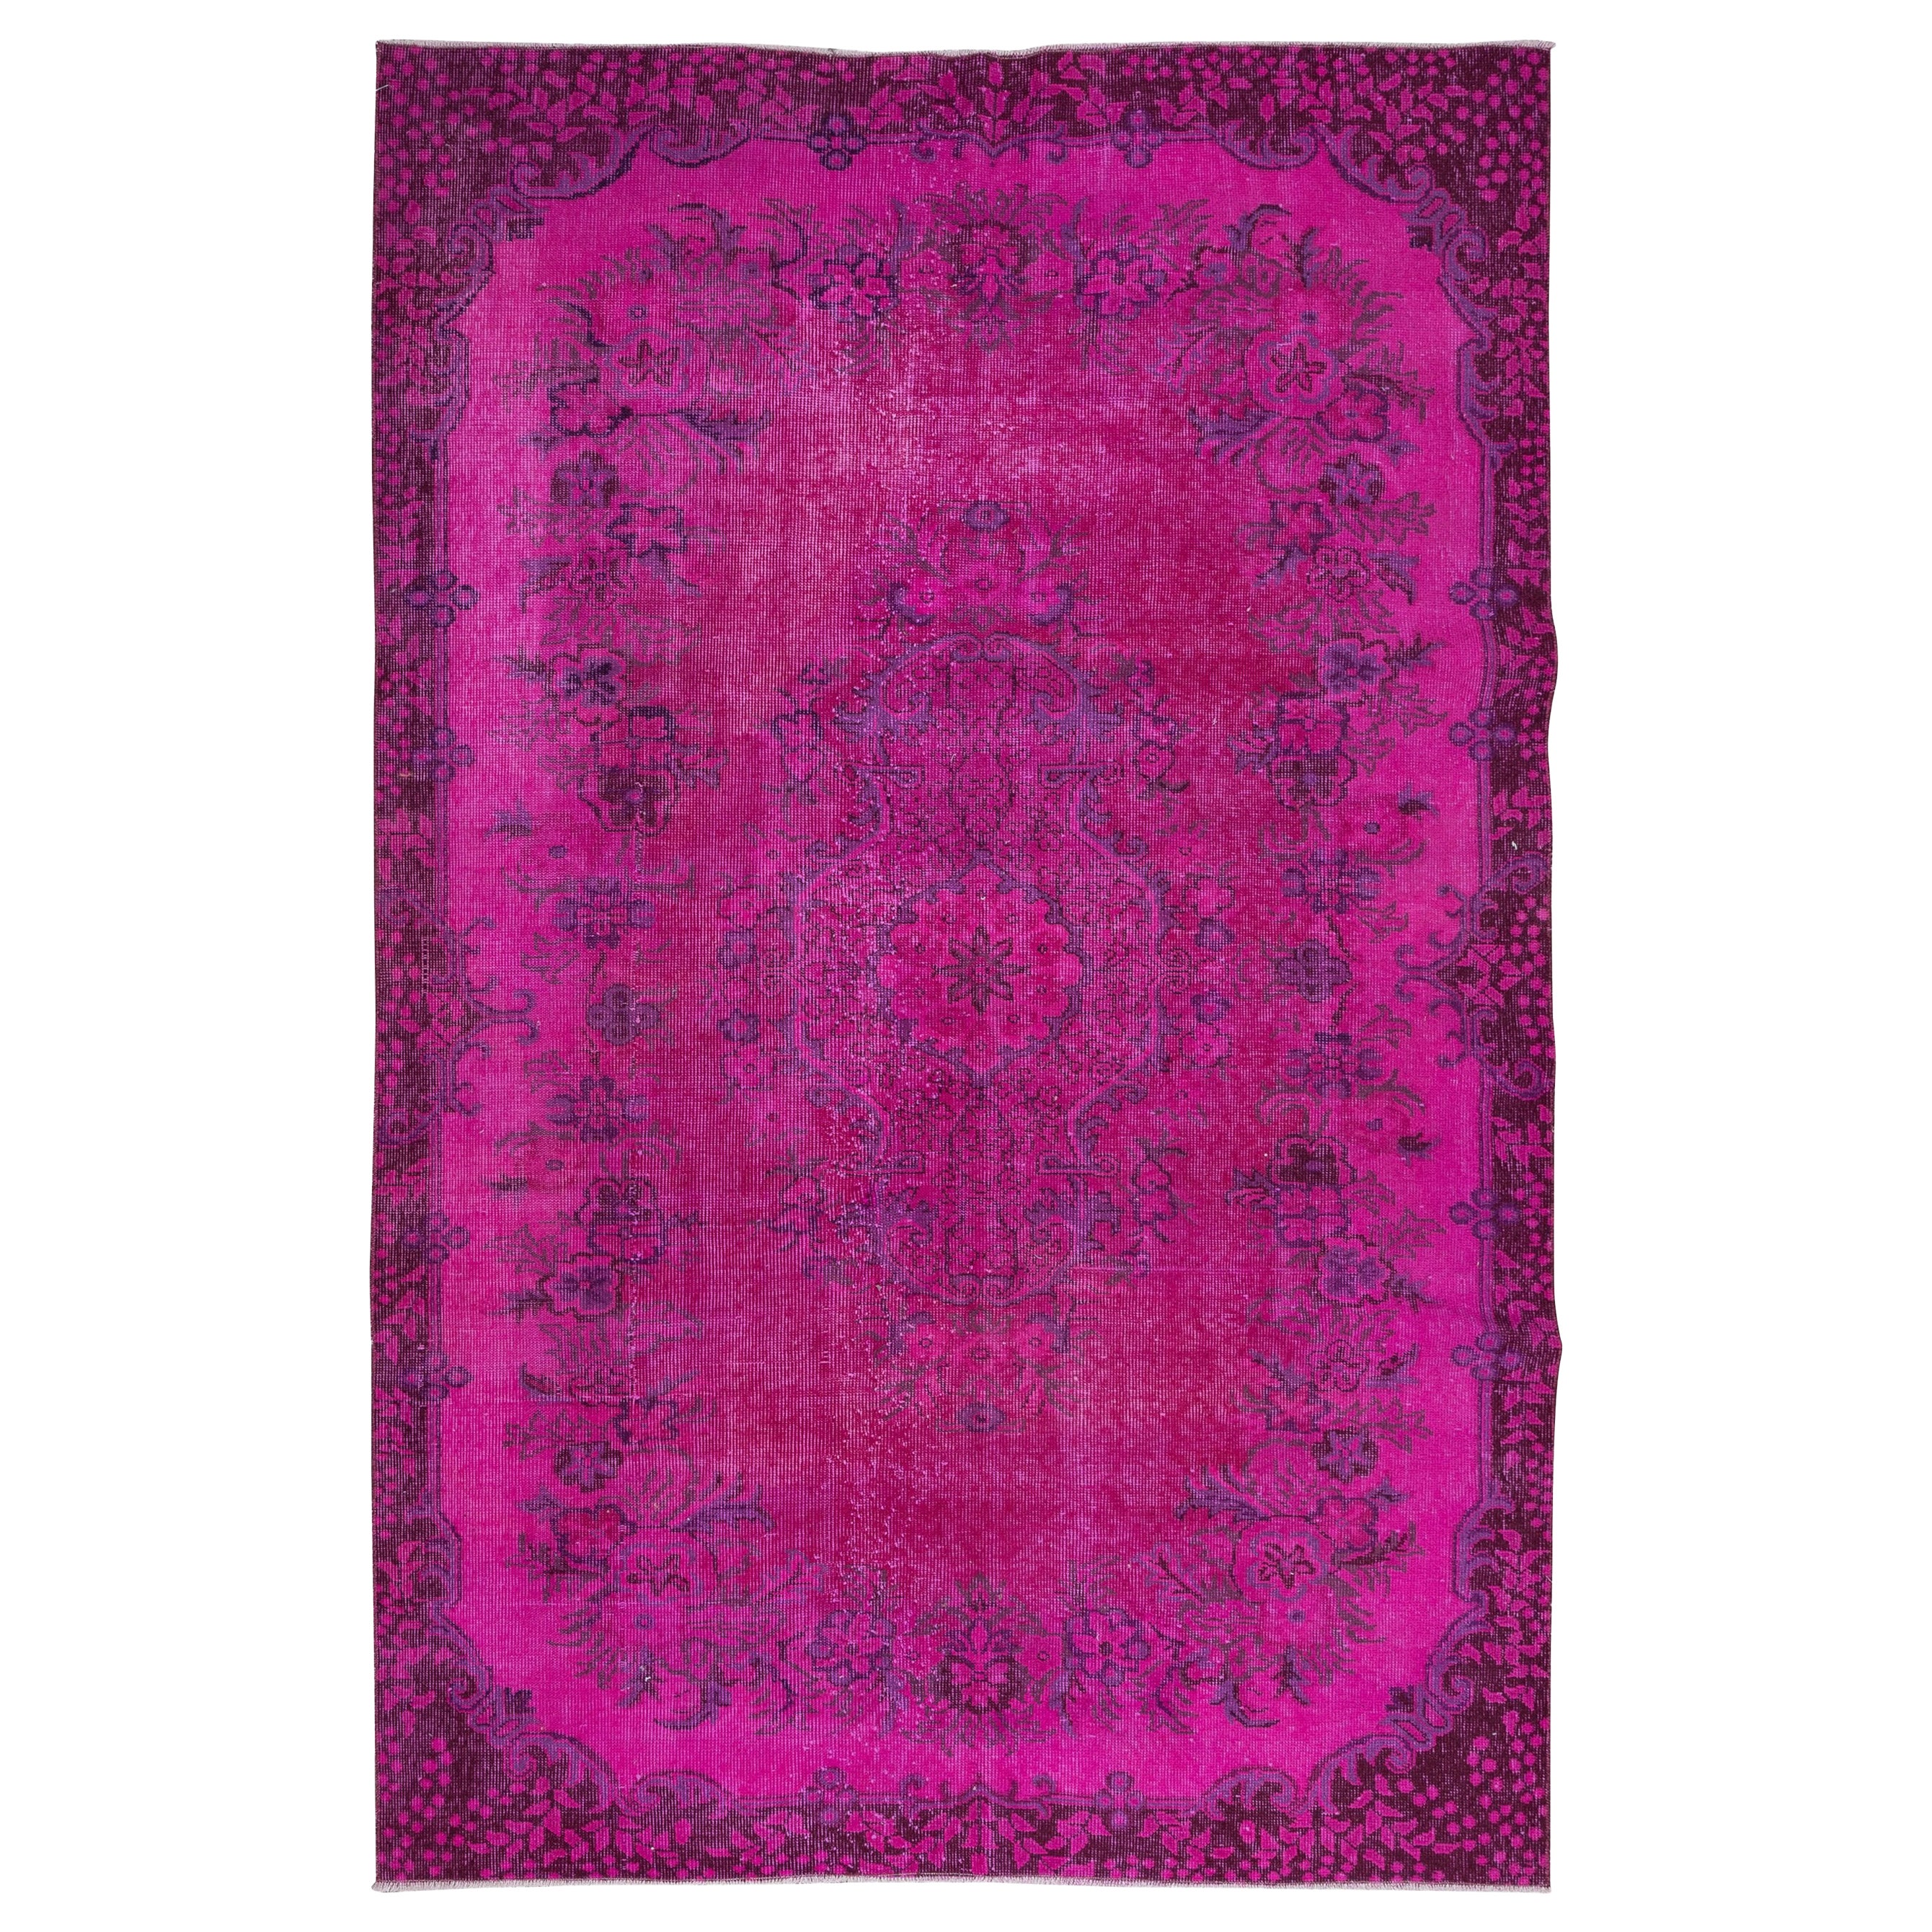 5.6x8.6 Ft Hot Pink Moderner türkischer Teppich mit Blumenmuster, handgefertigter Teppich